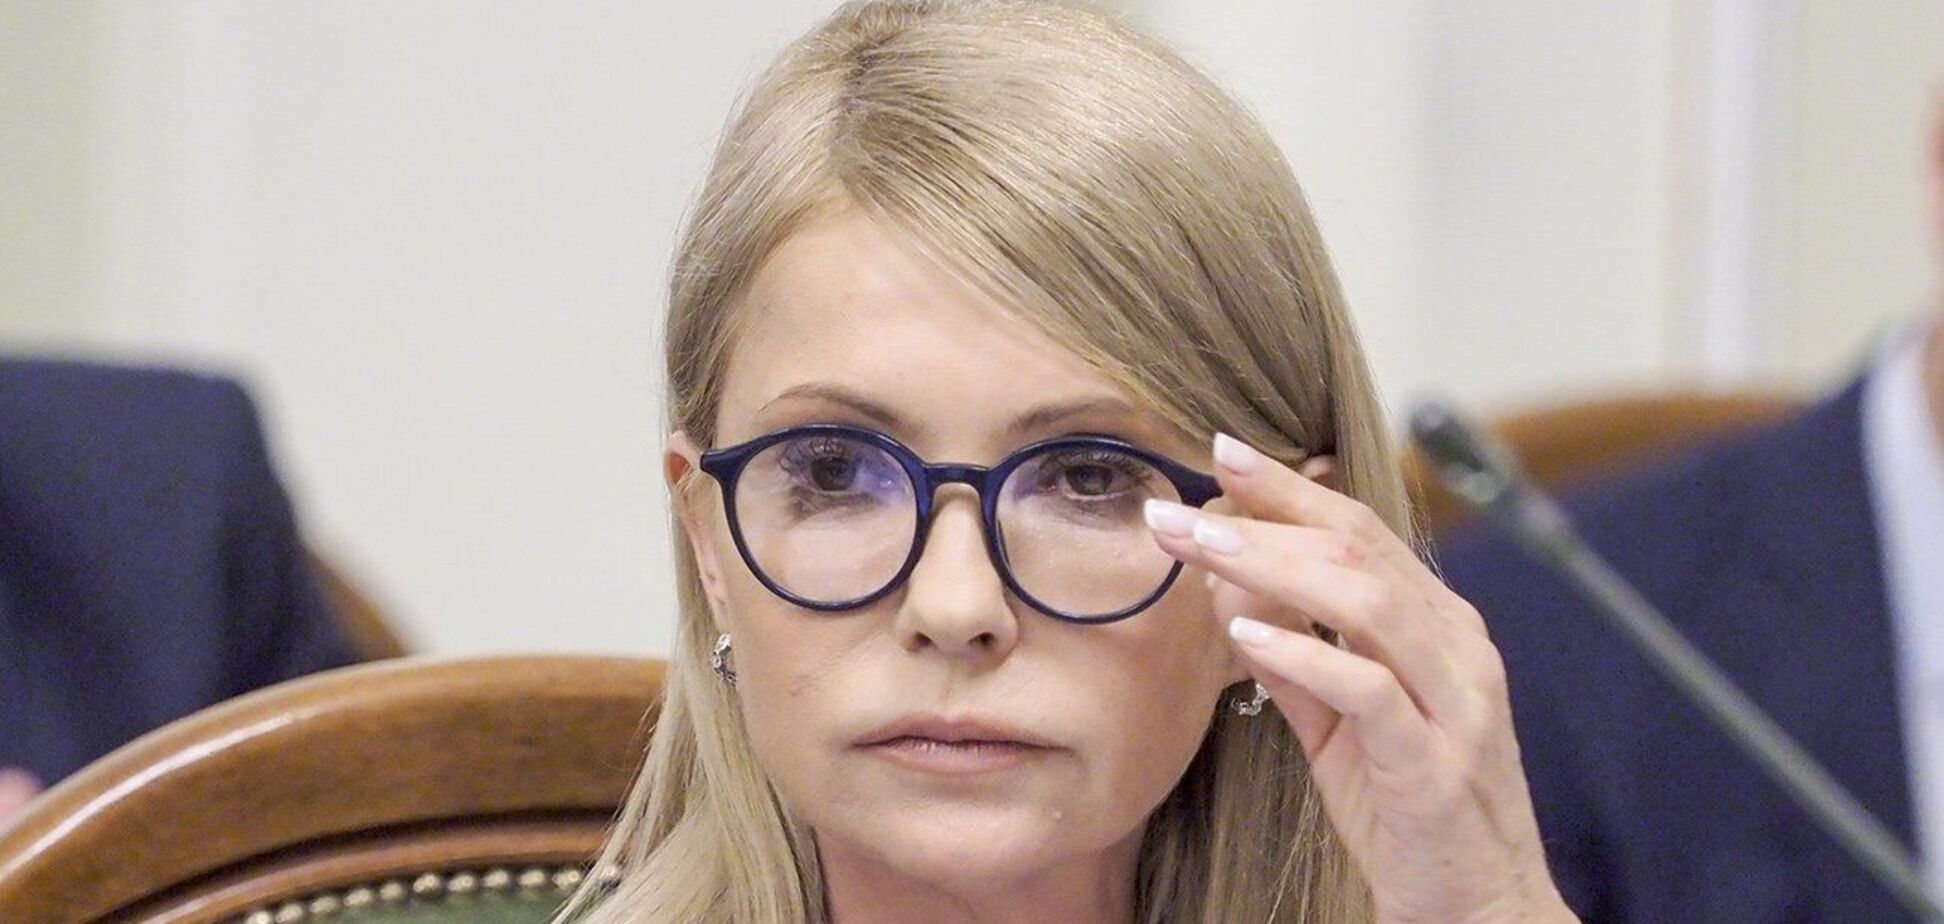 Тимошенко появилась на публике в новом образе: как теперь выглядит нардеп. Фото